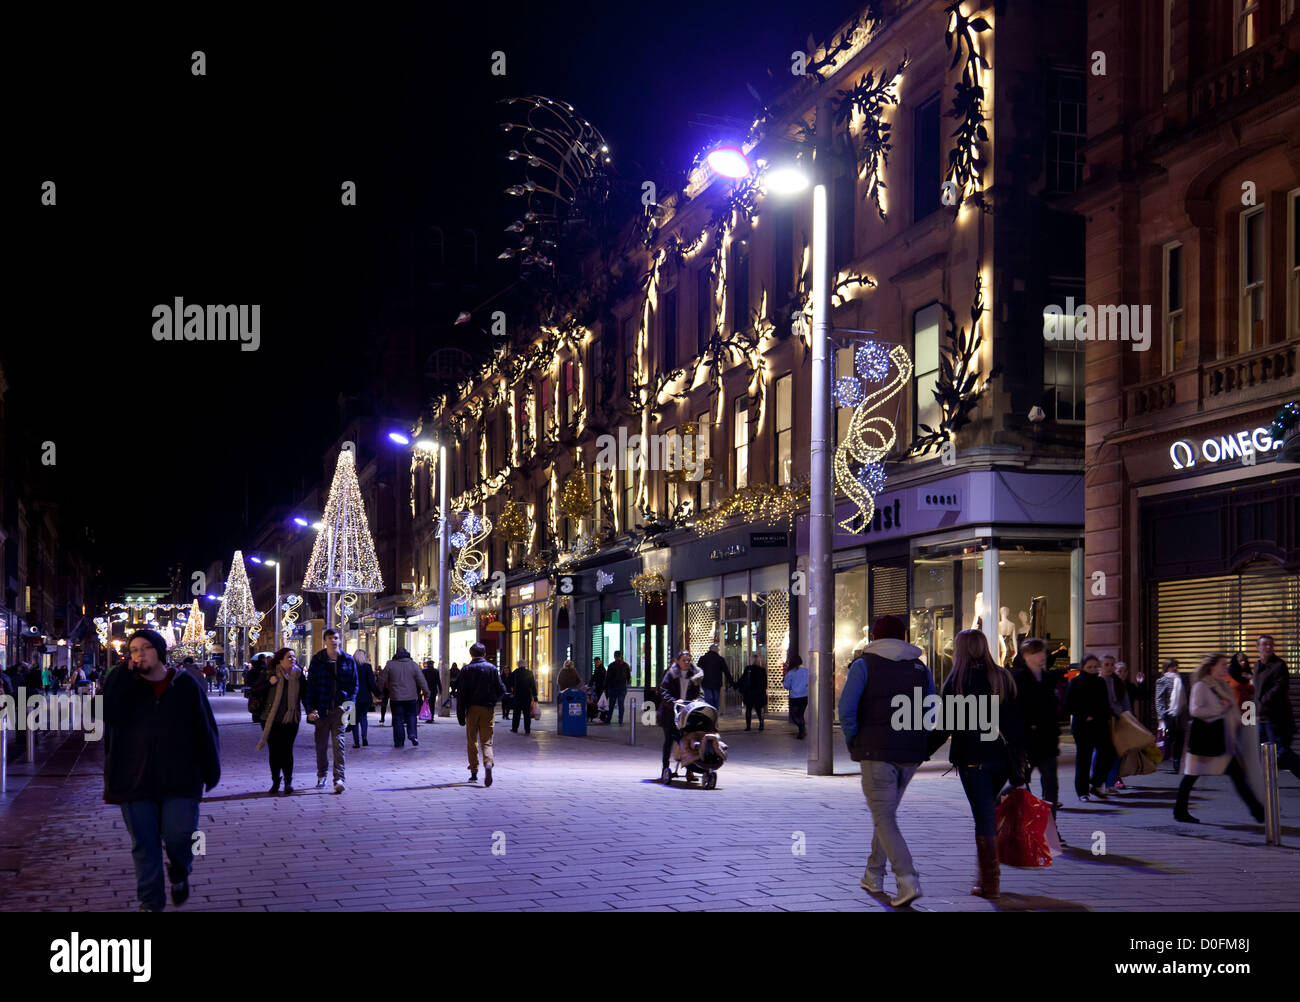 Buchanan Street Glasgow la nuit - Novembre. Les travailleurs et les consommateurs sous des lumières bleues. Princes Square. Lumières de Noël. L'Ecosse Banque D'Images